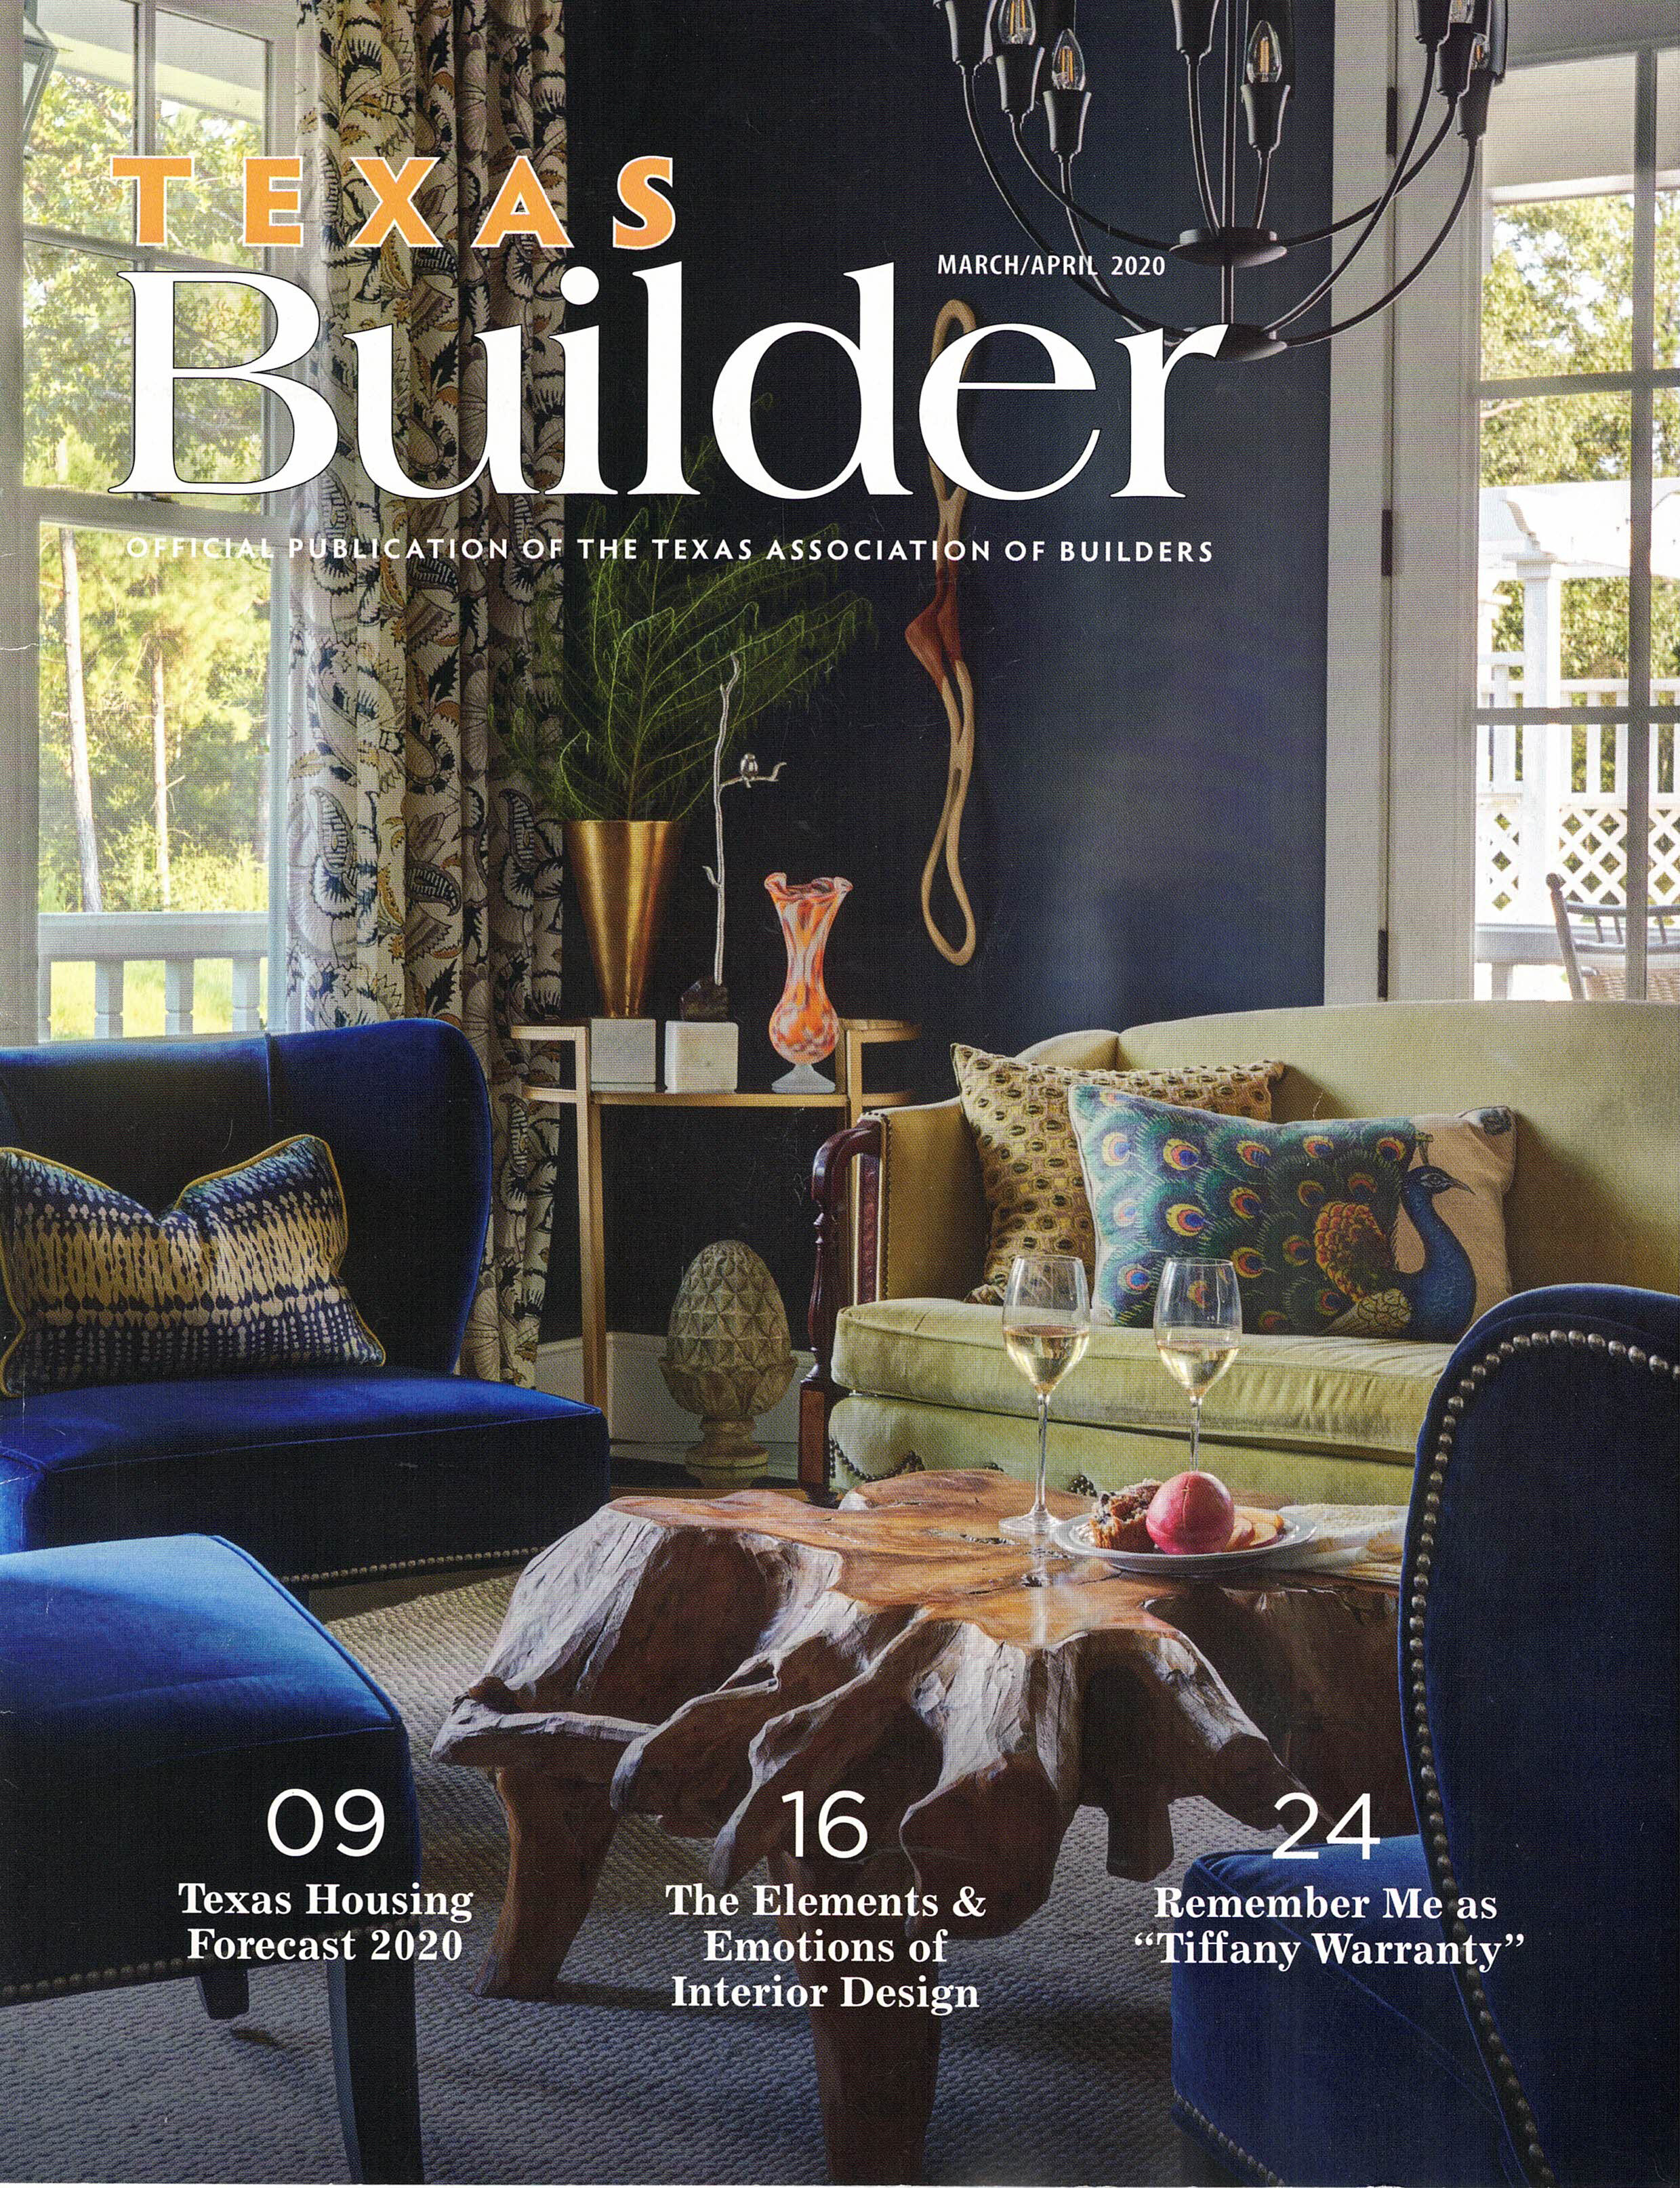 Texas Builder 3-4 2020 cover.jpg